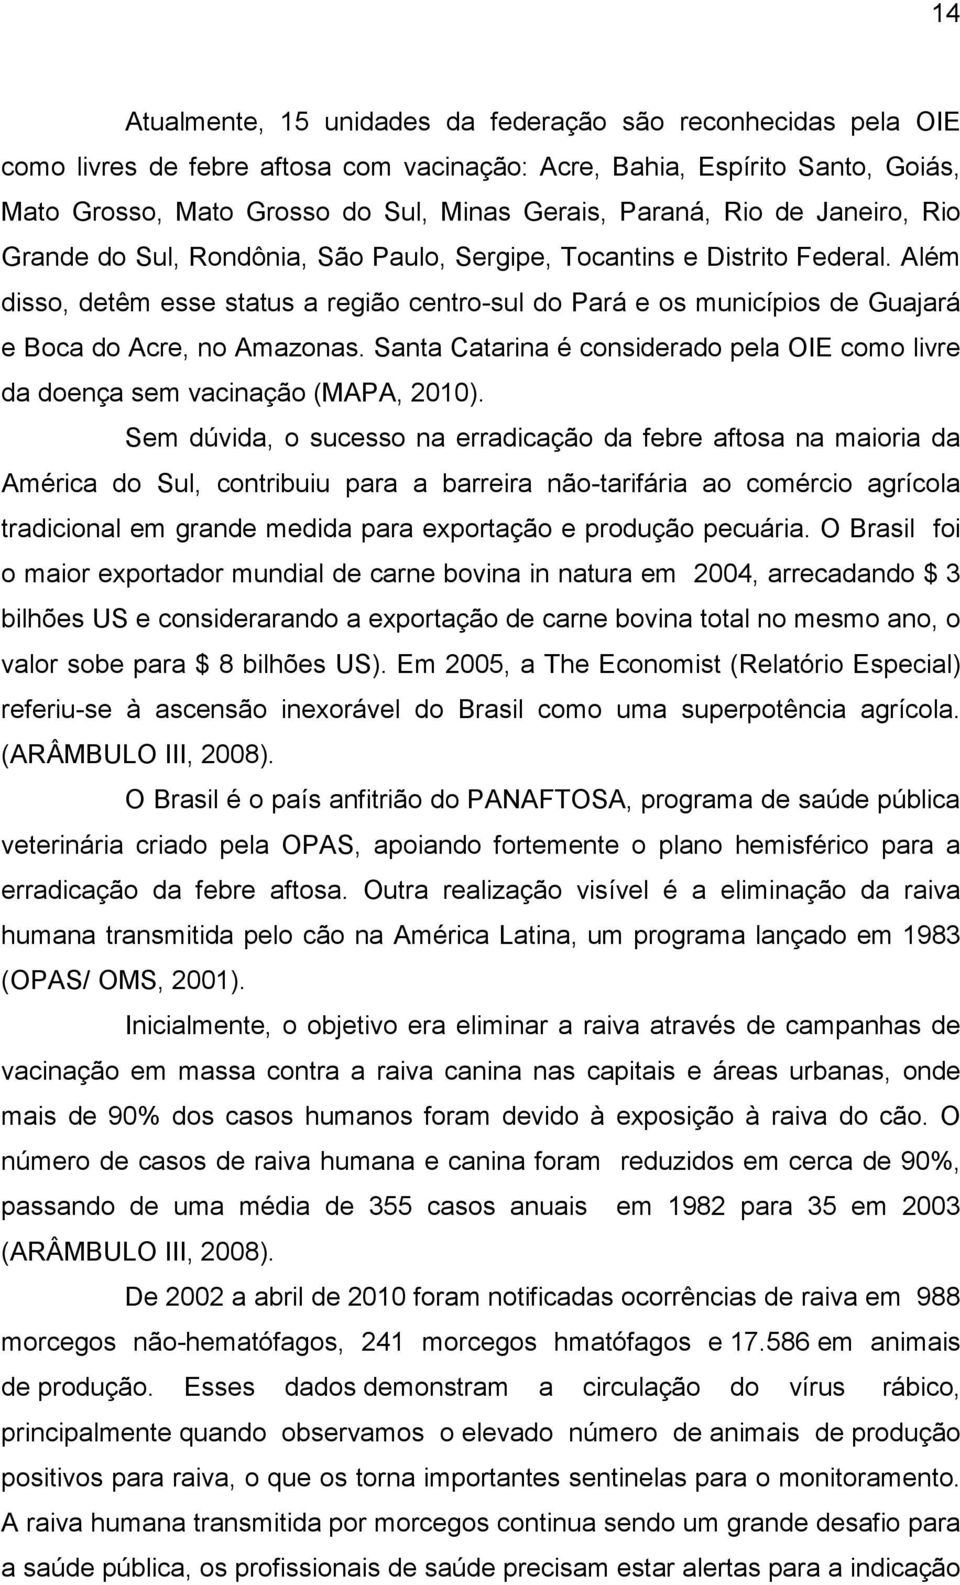 Além disso, detêm esse status a região centro-sul do Pará e os municípios de Guajará e Boca do Acre, no Amazonas. Santa Catarina é considerado pela OIE como livre da doença sem vacinação (MAPA, 2010).